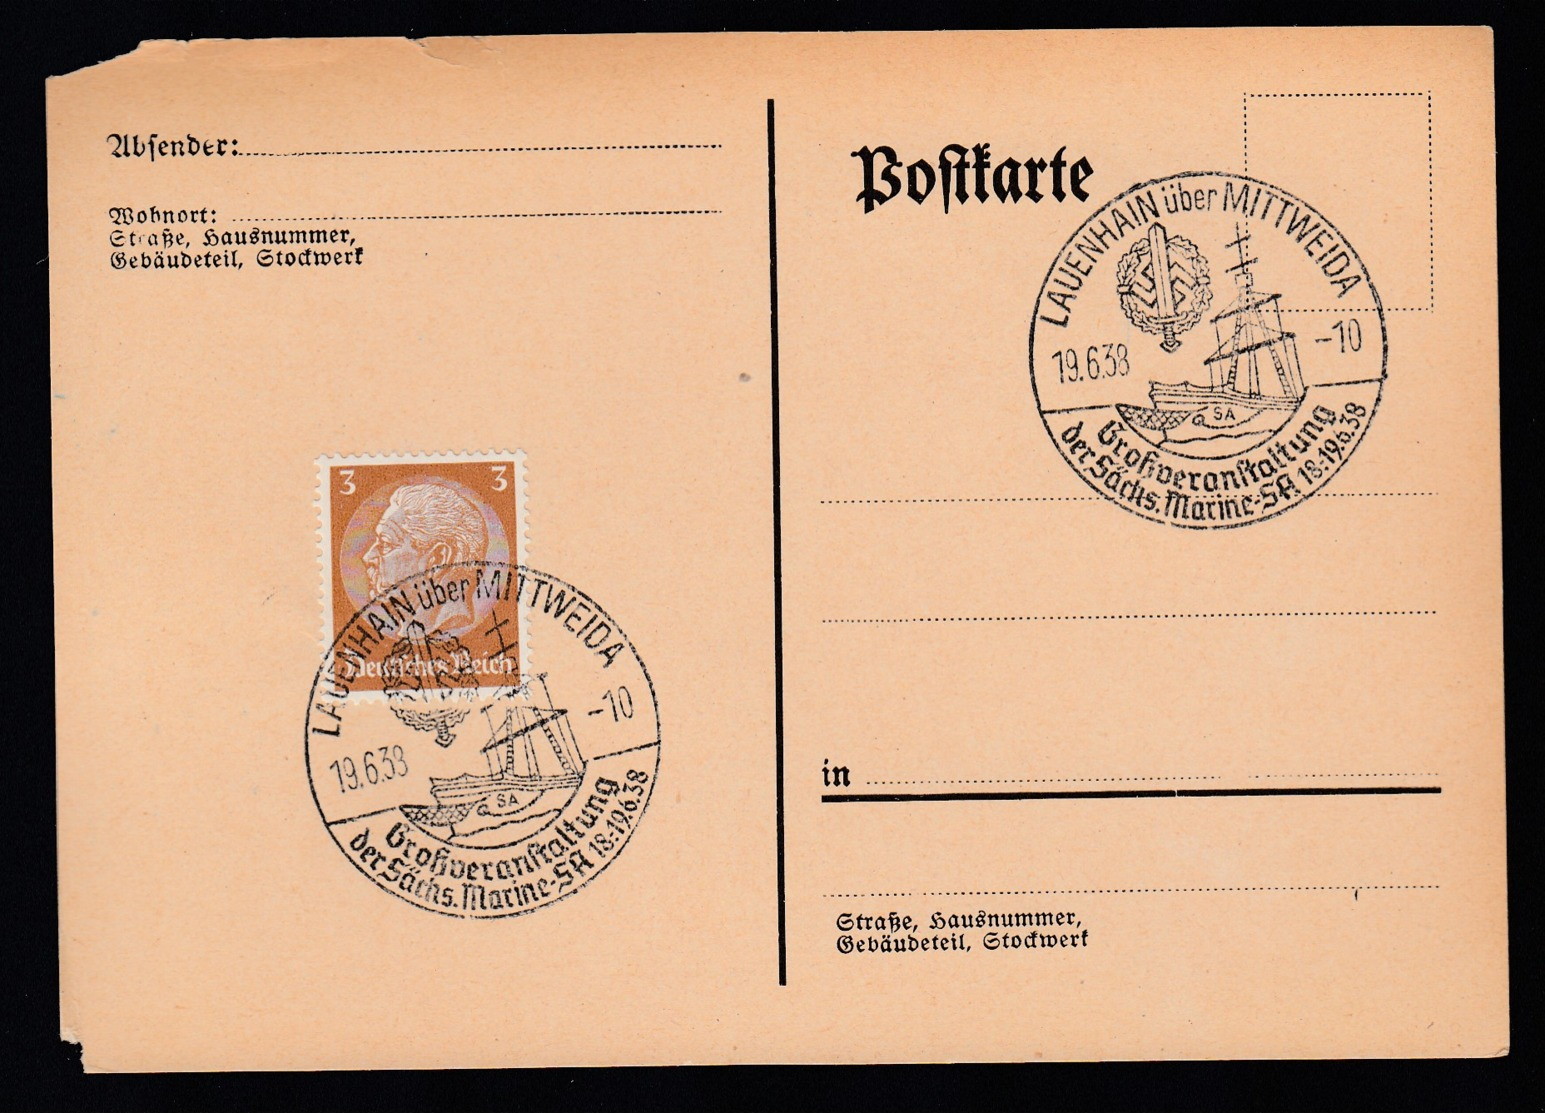 Deutsches Reich Postkarte Ungelaufen Sonderstempel 1938 Lauenhaisn über Mittweida Lot 347D - Maschinenstempel (EMA)